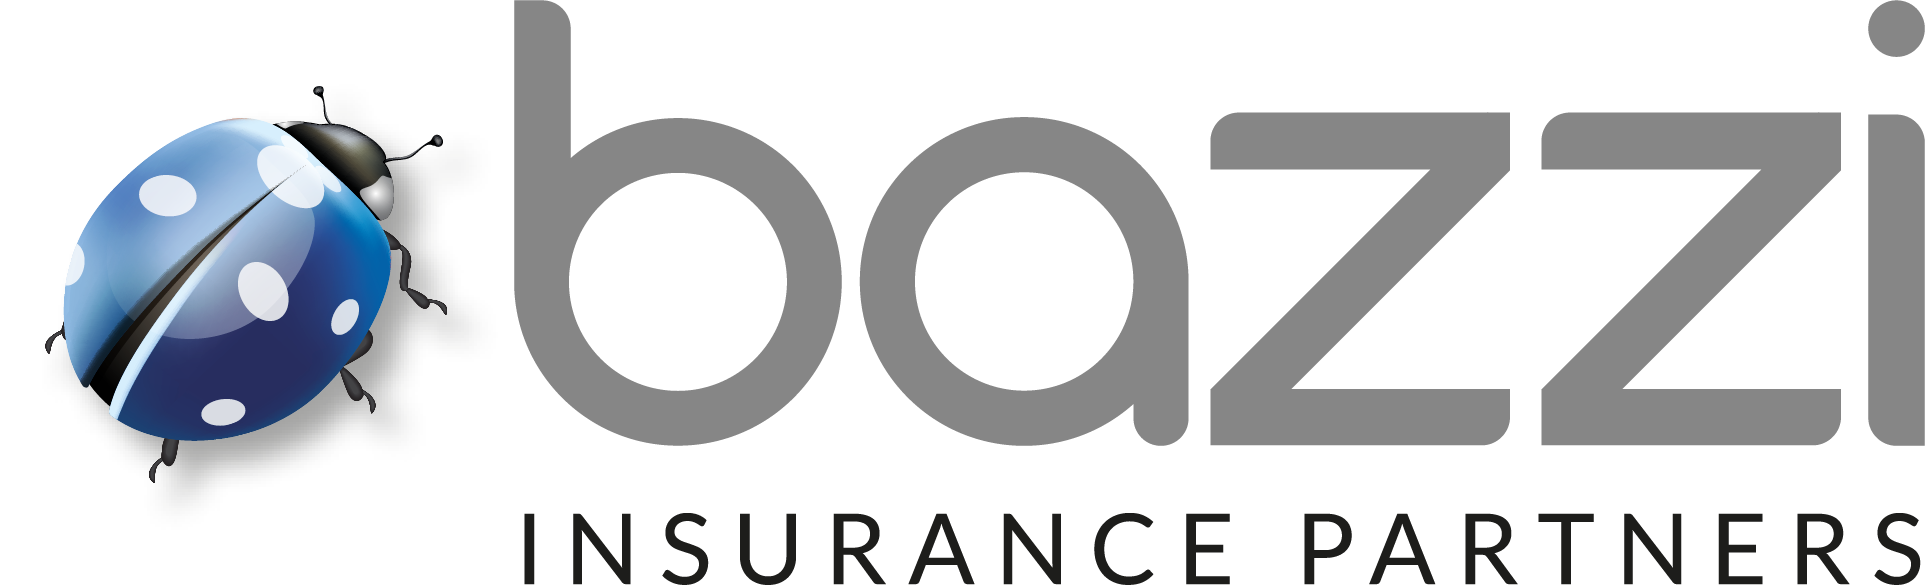 Bazzi insurance partners